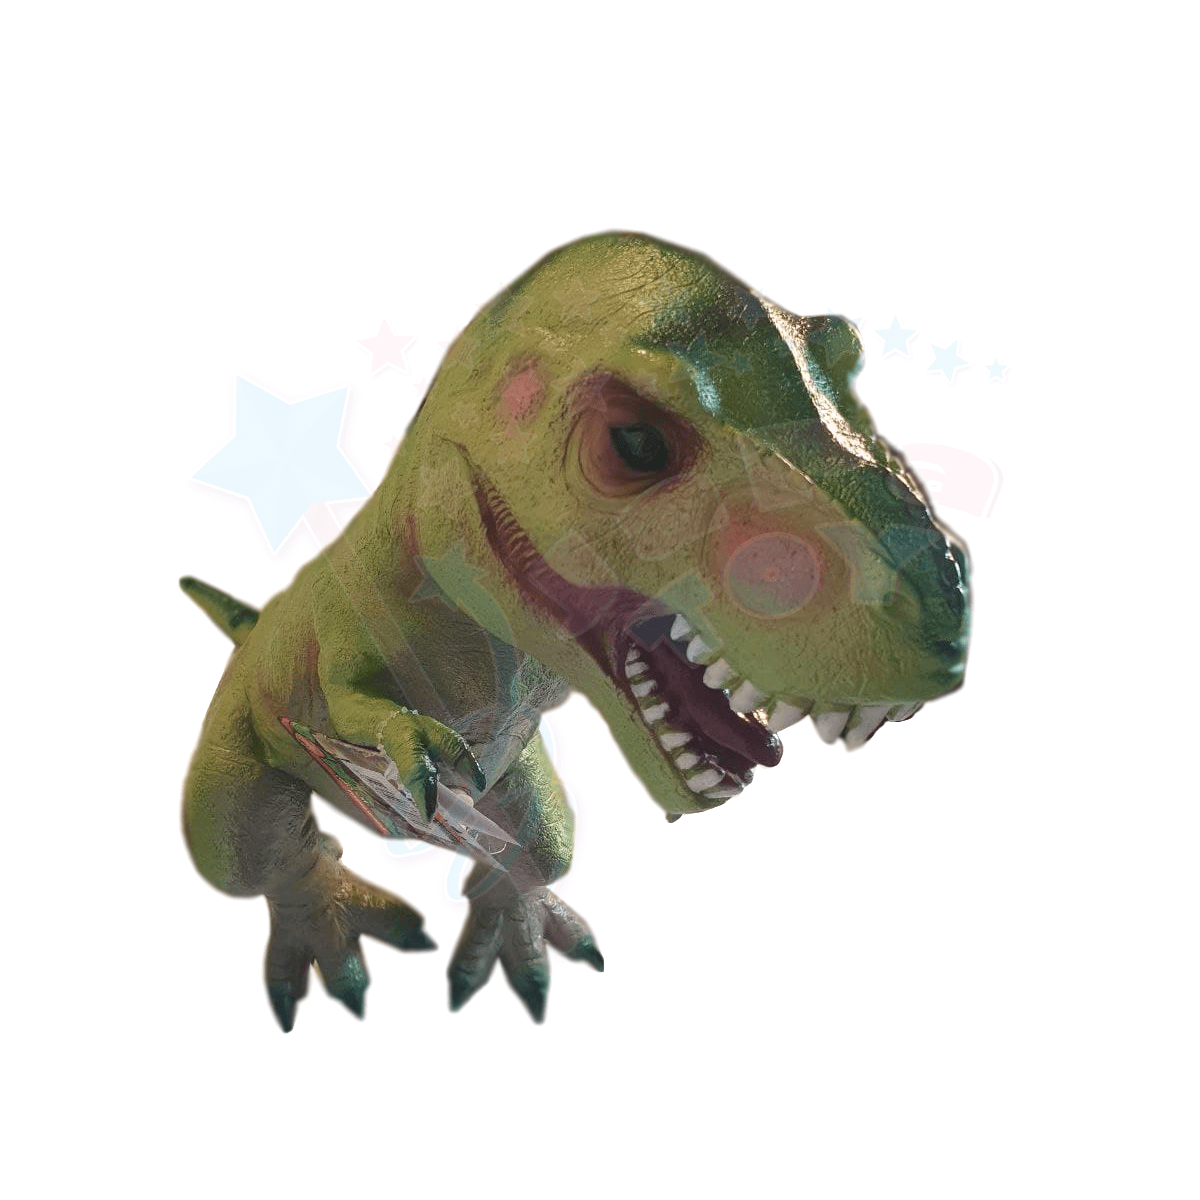 فیگور دایناسور تیرکس بزرگ نرم و صدادار سبز(Jurassic World Voice Dinosaur Figures)